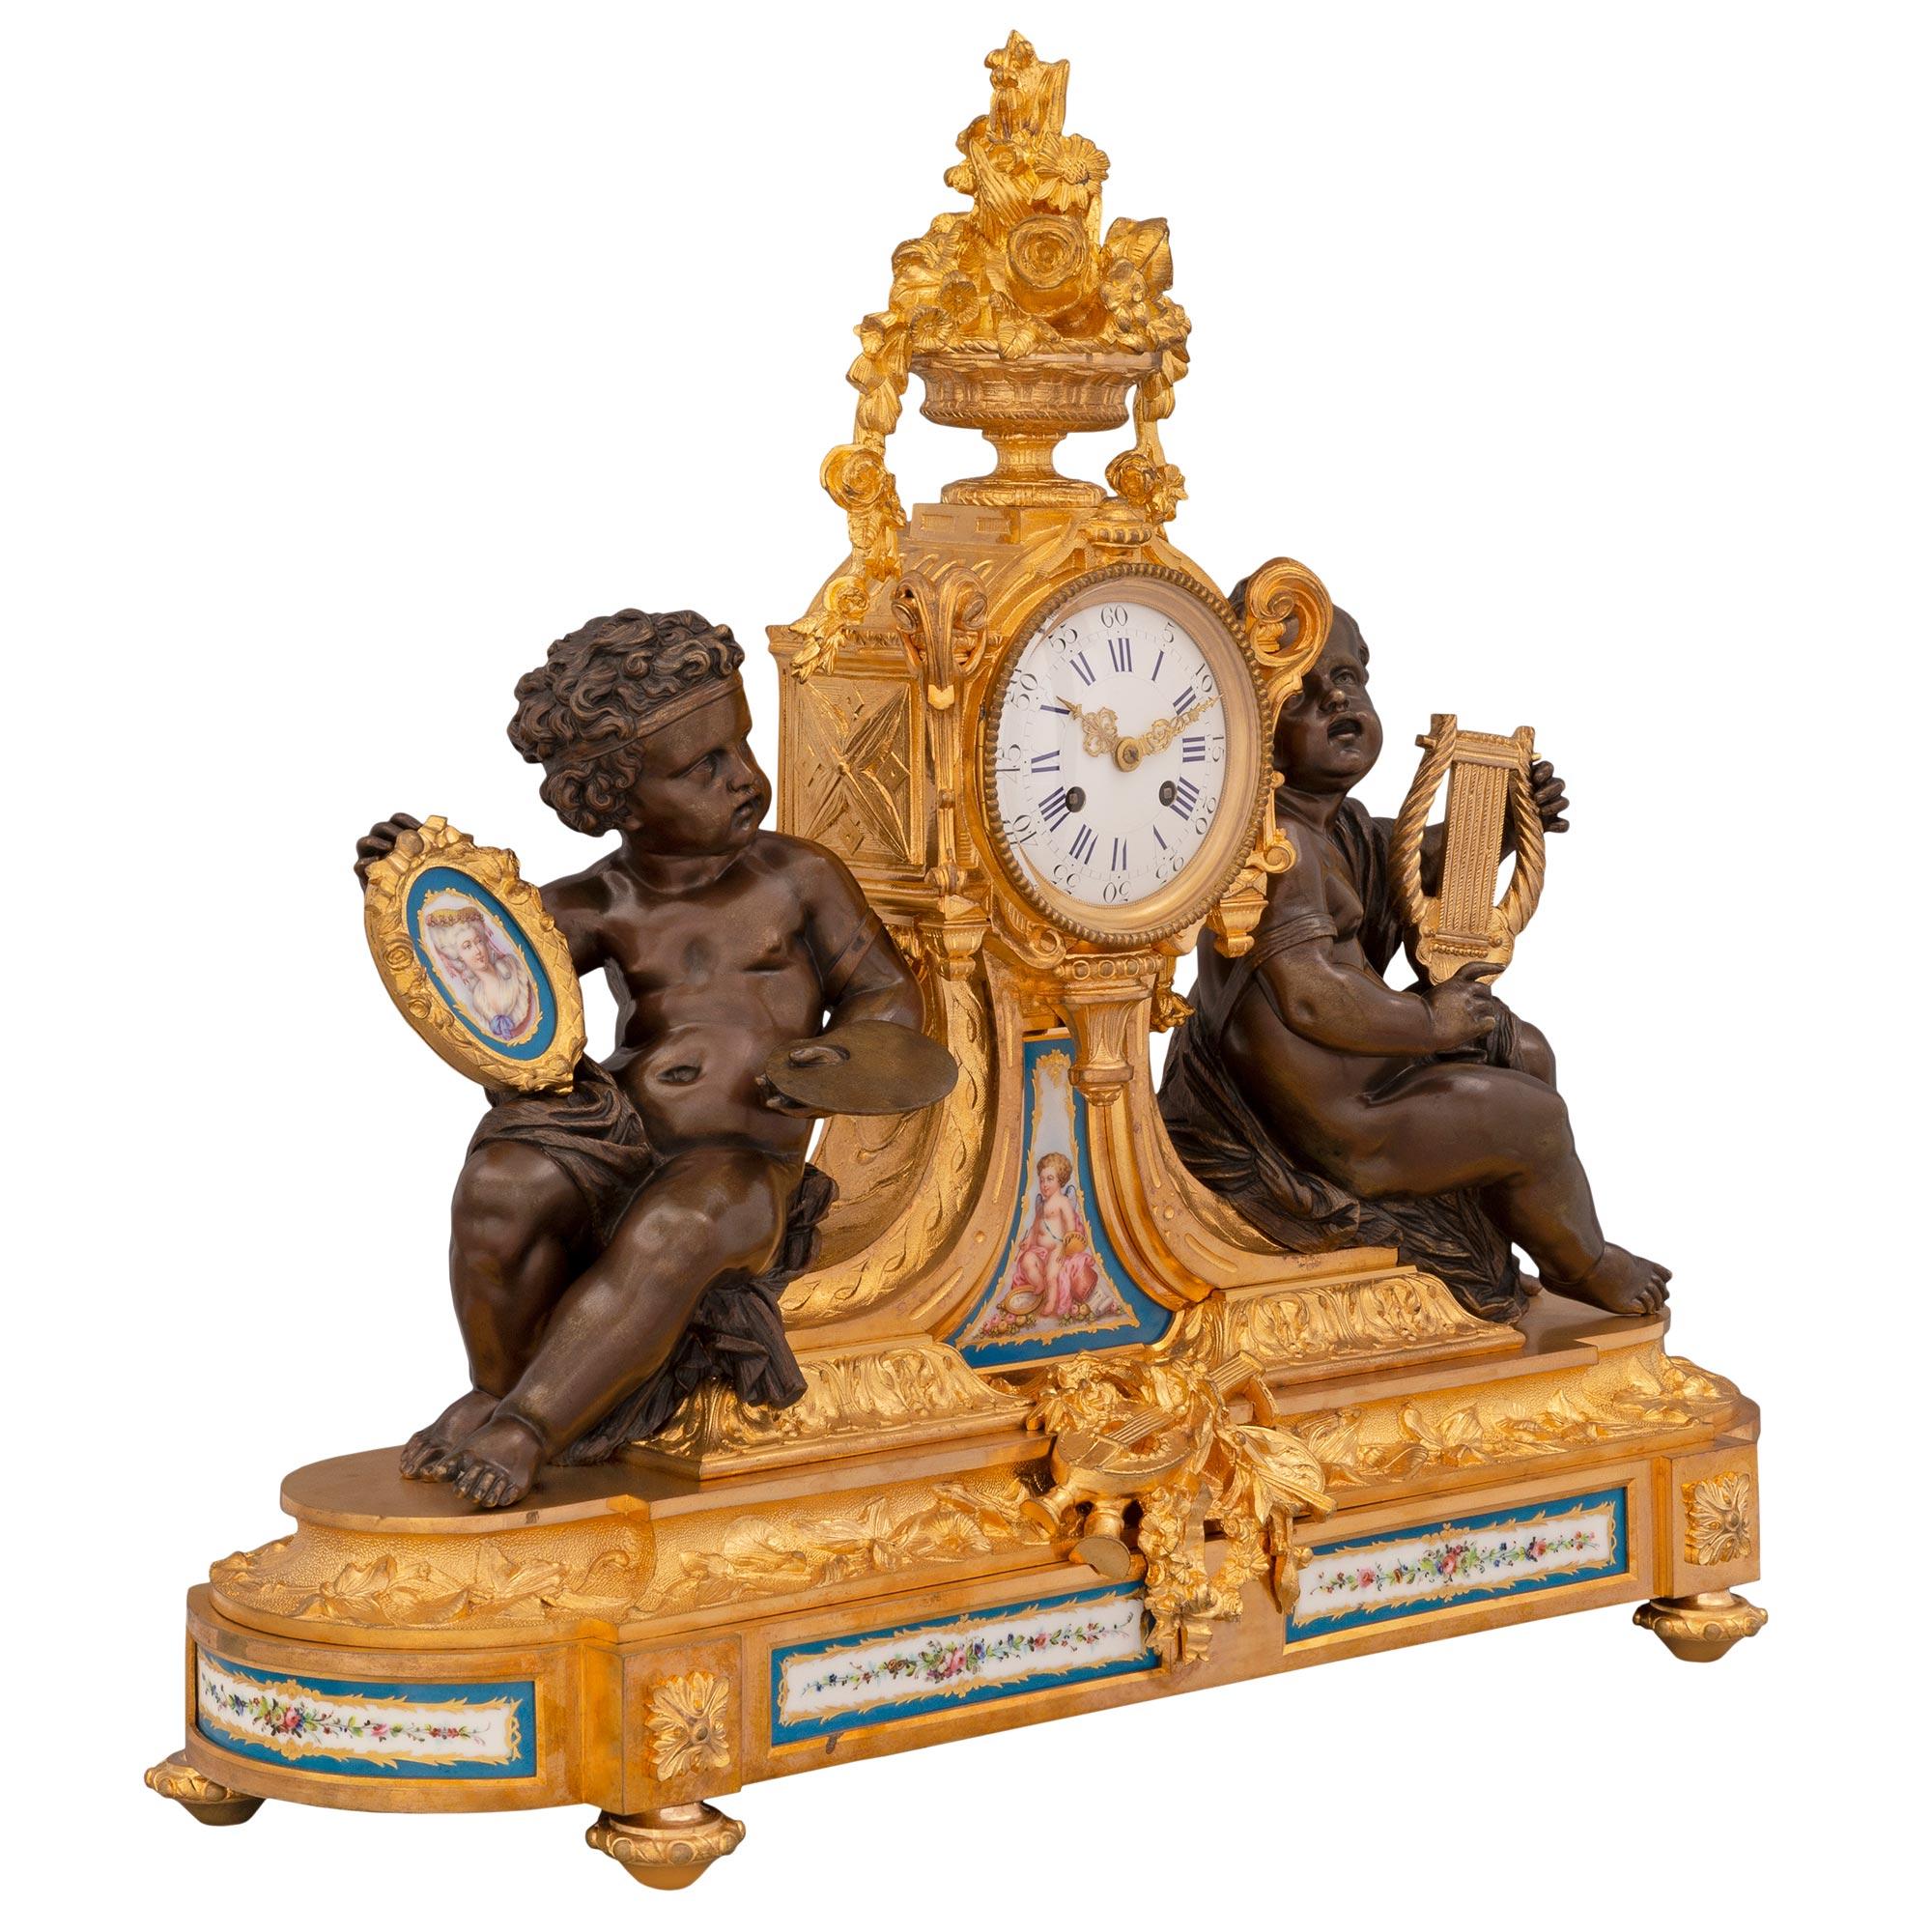 Magnifique pendule en porcelaine de Sèvres et bronze doré de style Louis XVI du XIXe siècle. La pendule repose sur de fins pieds en forme de topie sous la base en bronze doré qui est décorée d'élégantes rosettes en bloc au-dessus de chaque pied et